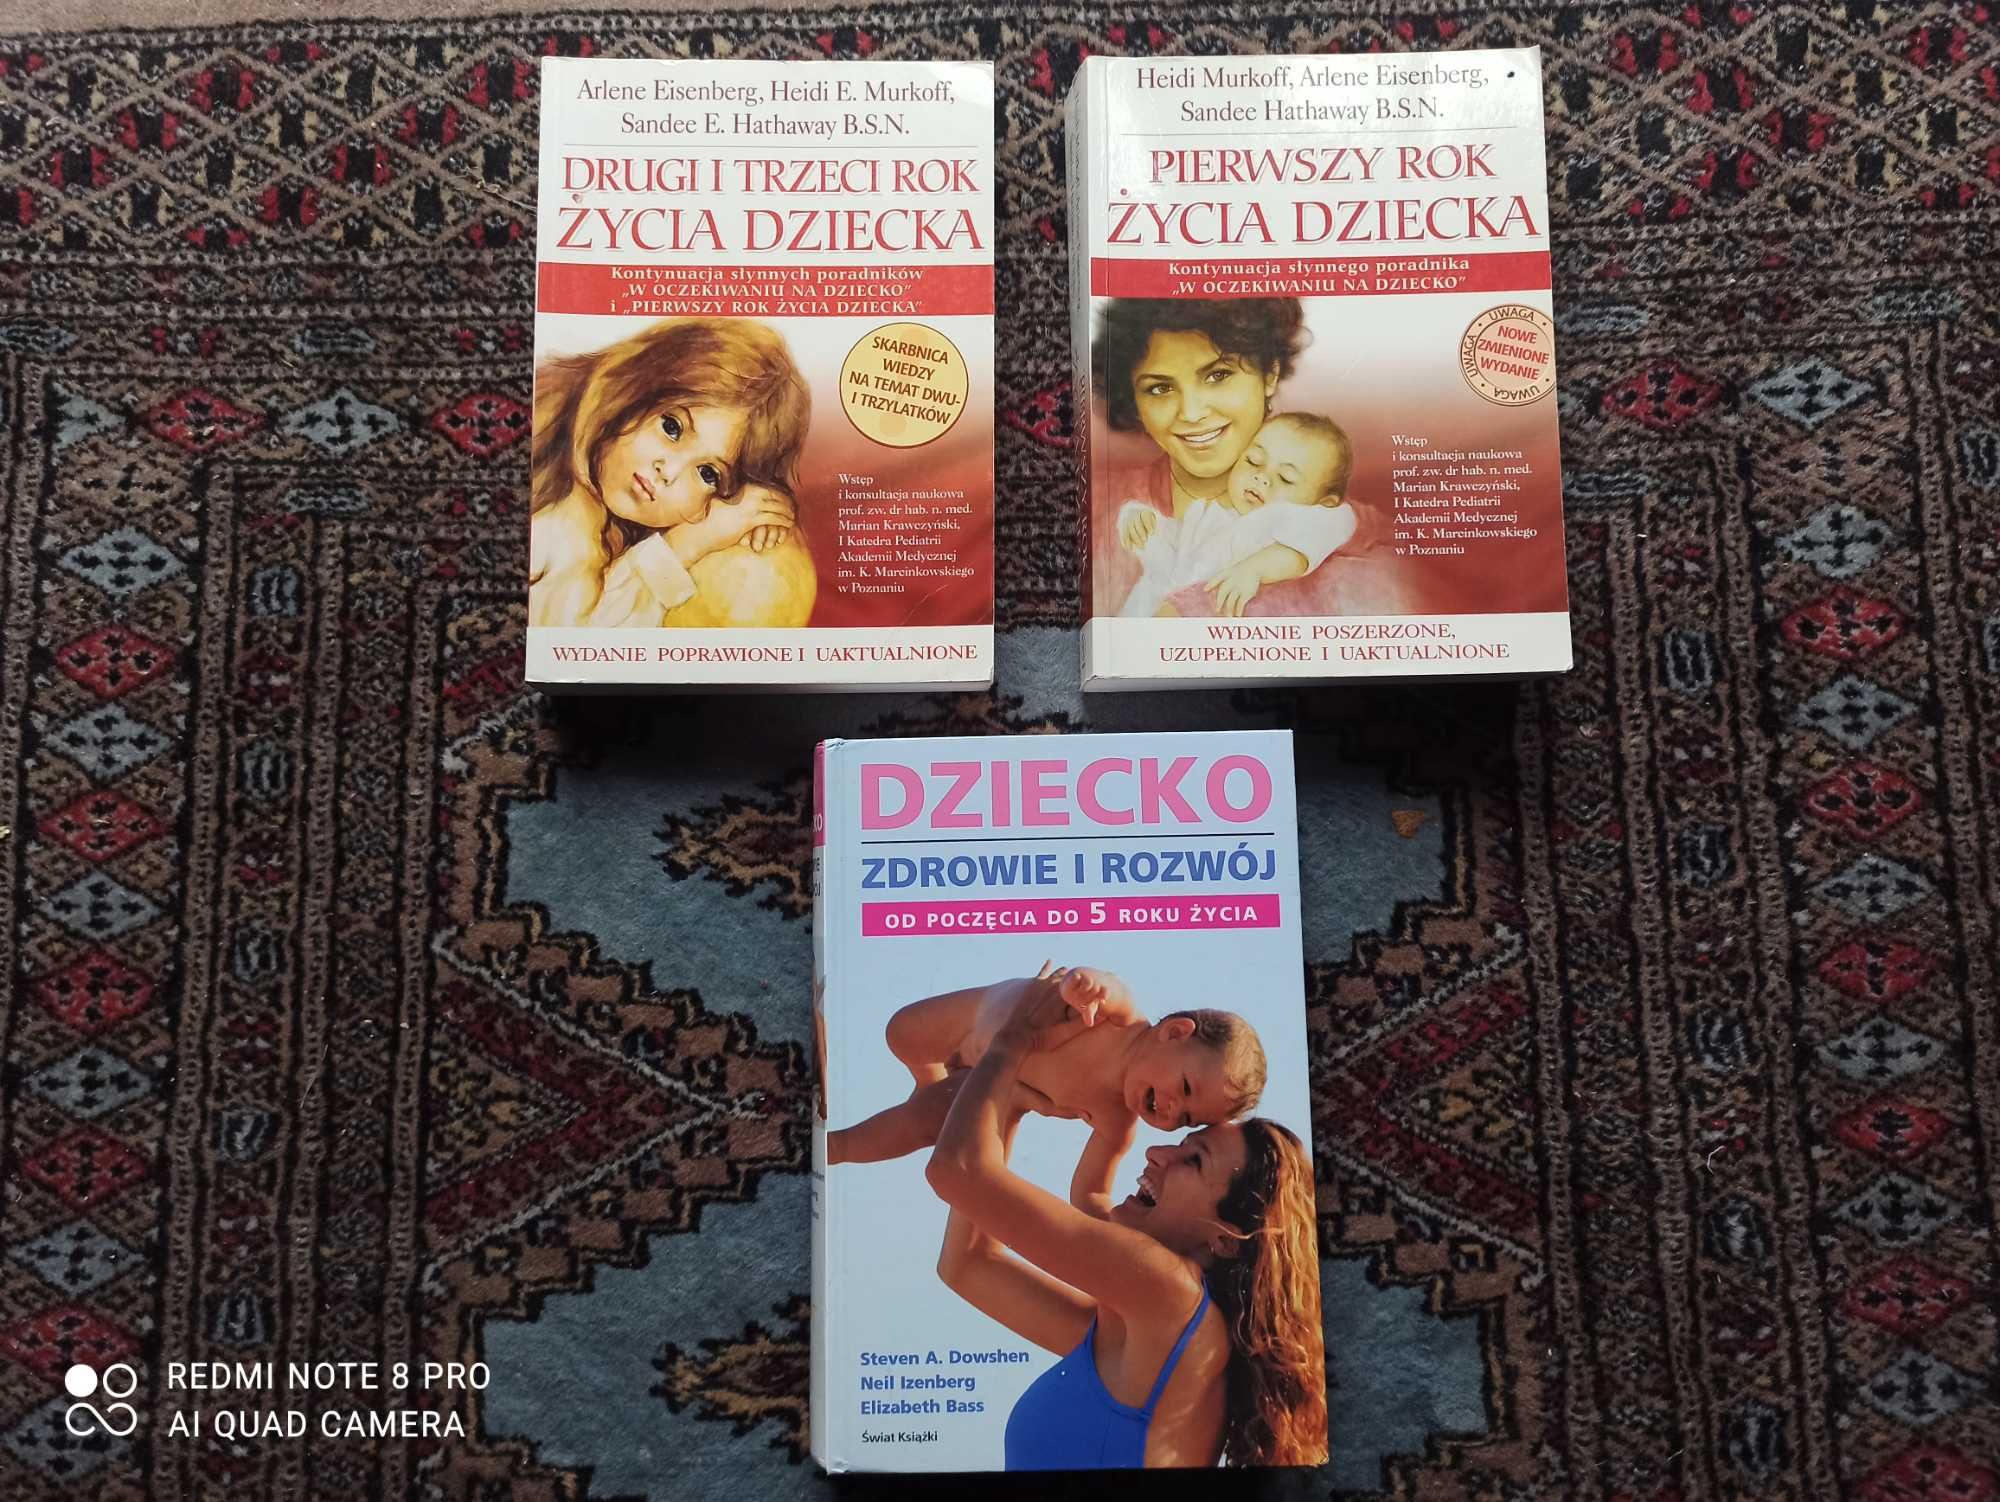 Książki zestaw 1 2 i 3 rok życia dziecka oraz Dziecko-zdrowie i rozwój